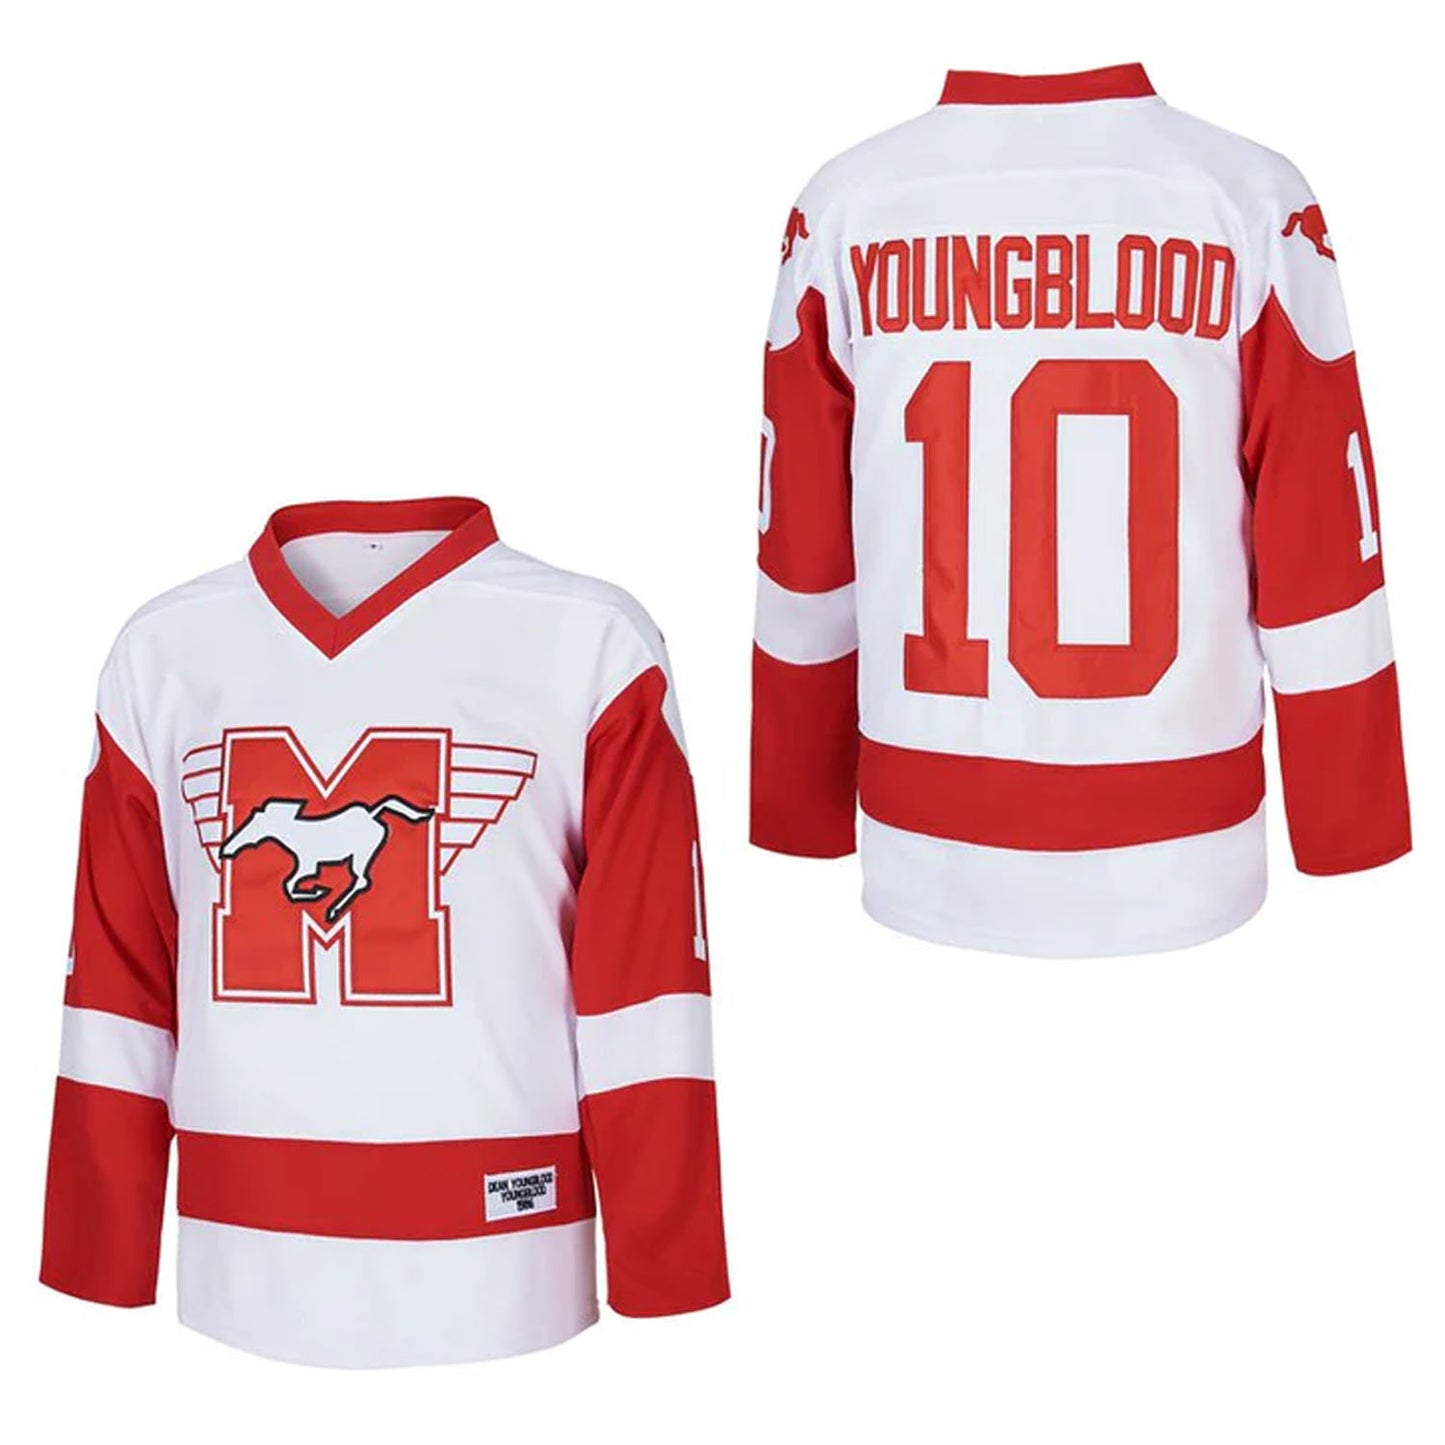 Dean Youngblood #10 Mustangs Hockey Jersey